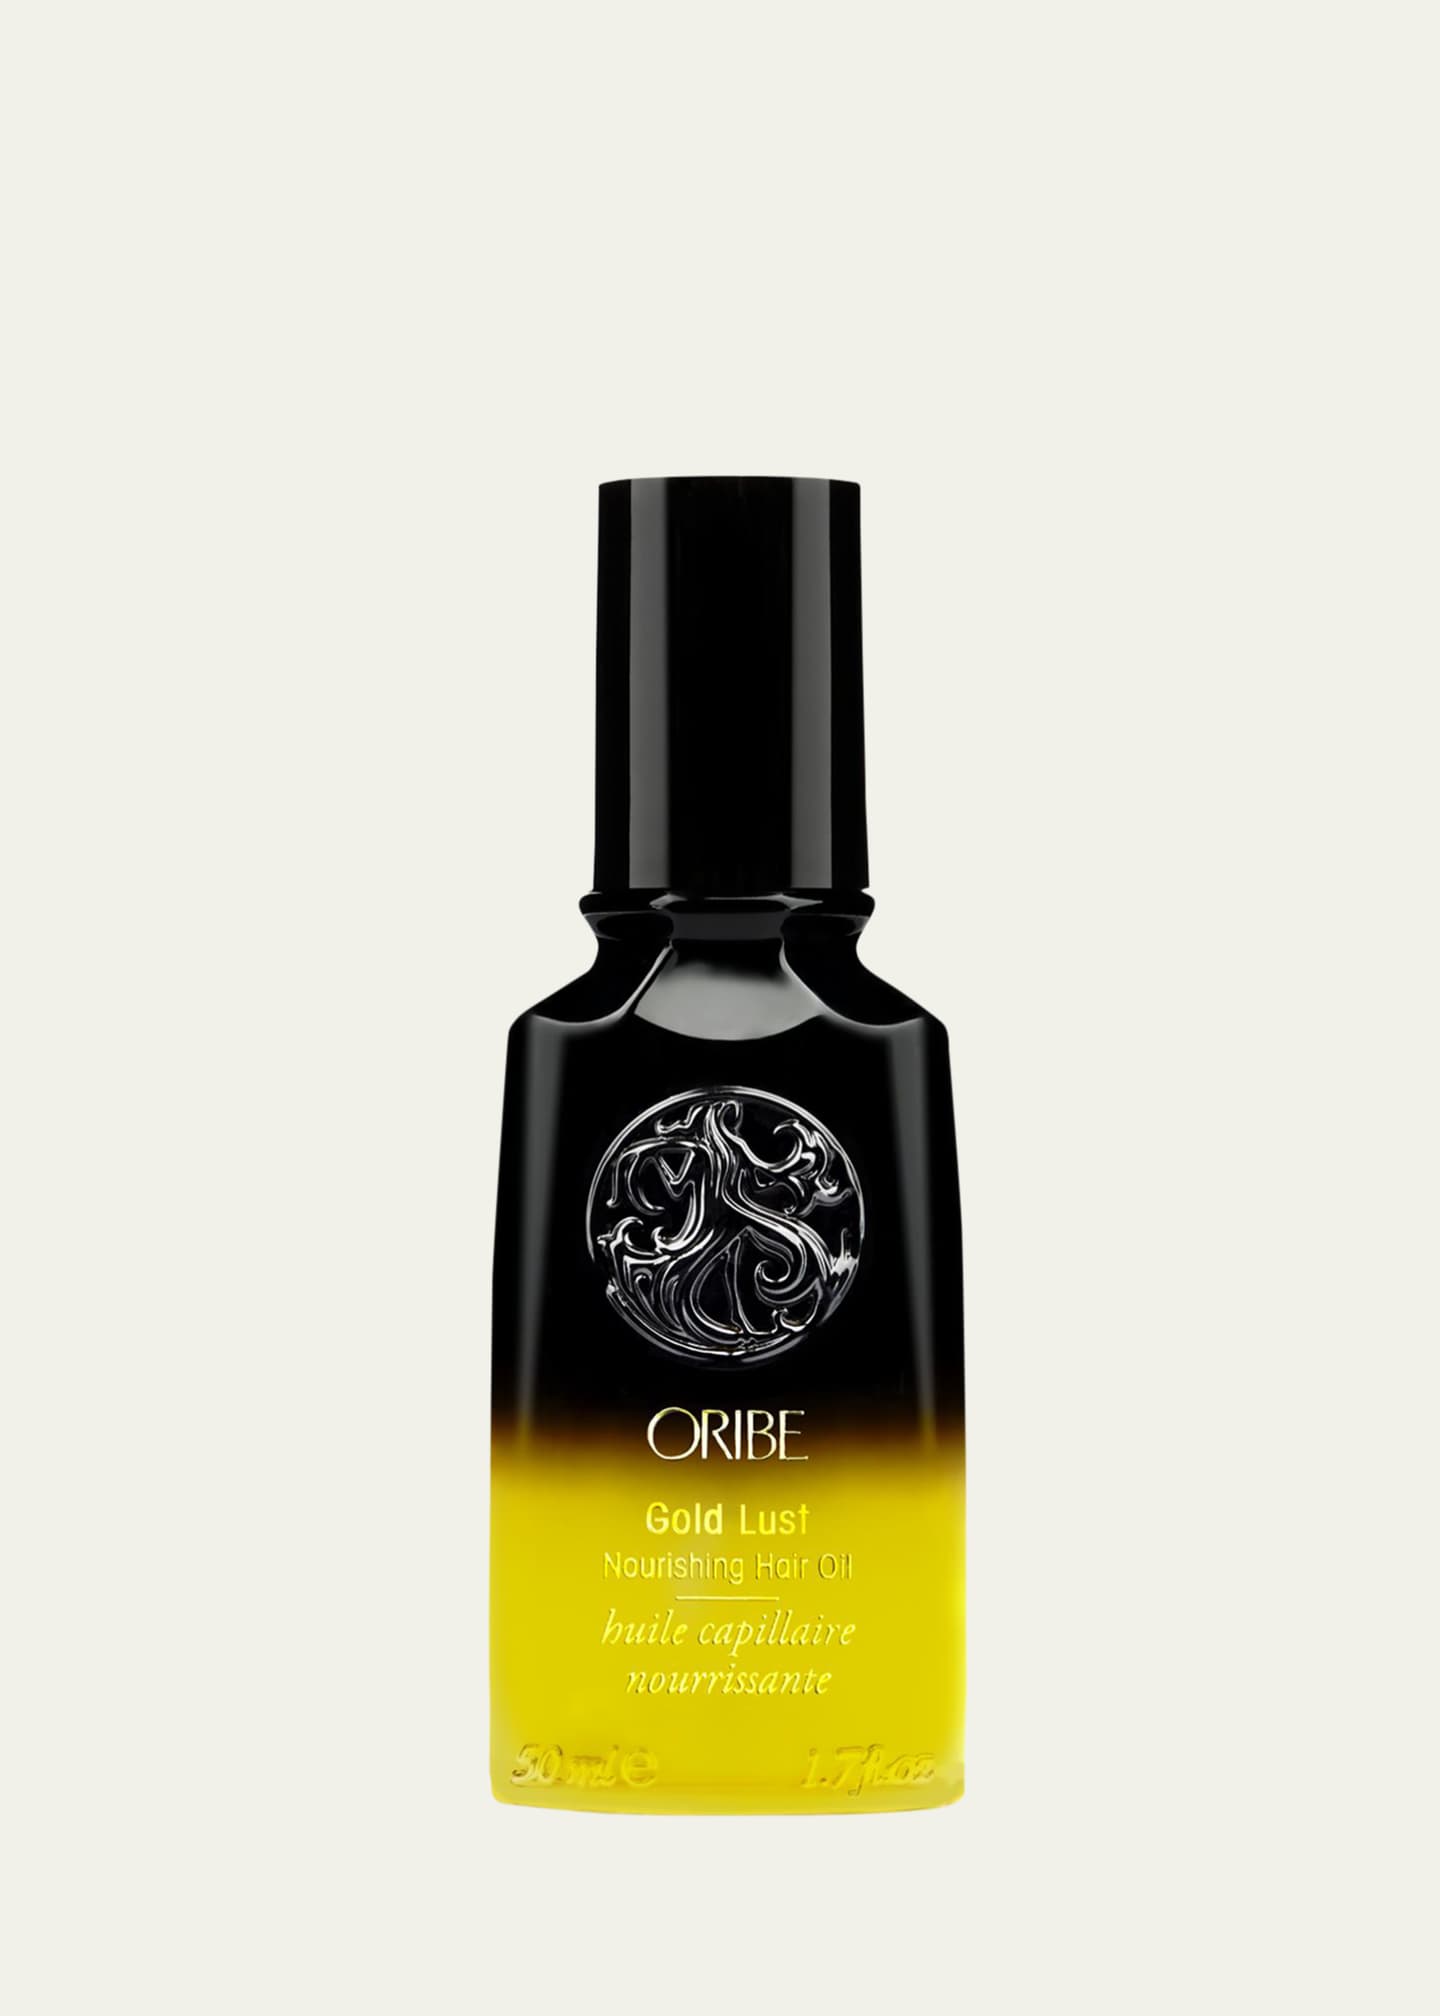 Oribe Gold Lust Nourishing Hair Oil, 1.7 oz. Image 1 of 2